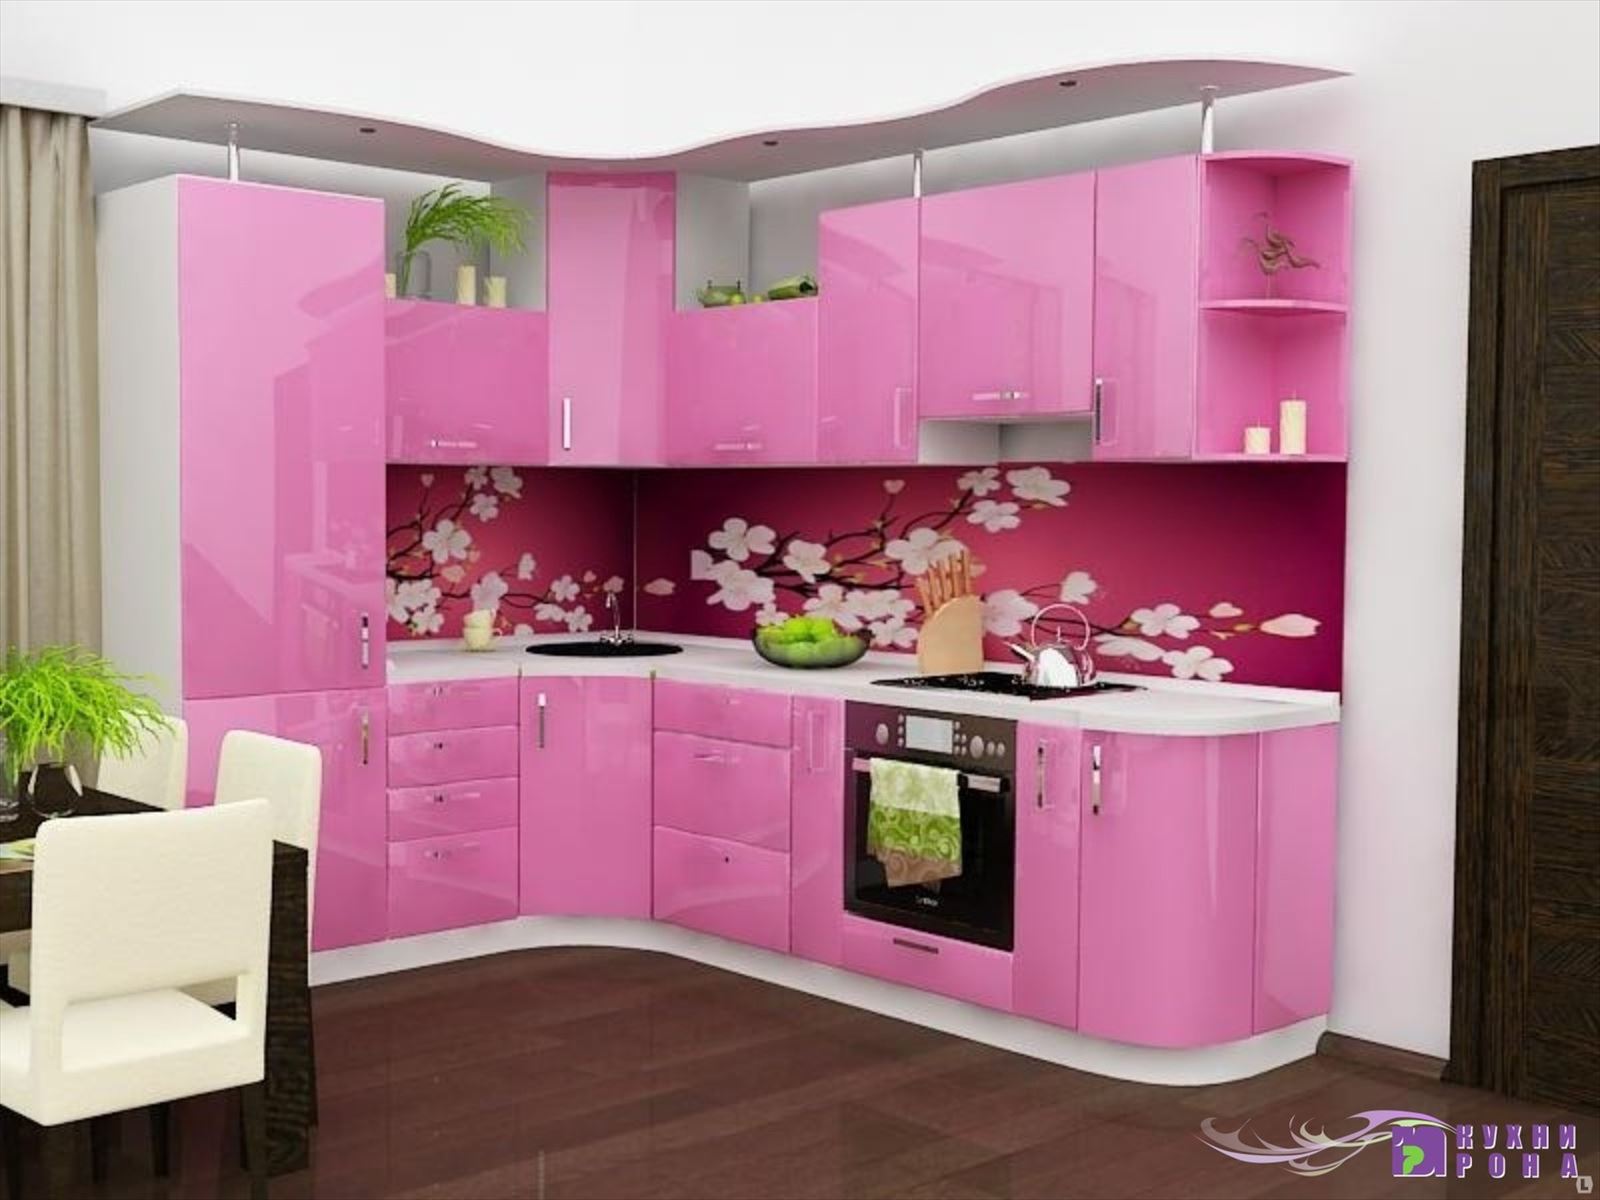 Купить кухонный комплект. Кухонные гарнитуры. Кухонный гарнитур розовый. Красивый кухонный гарнитур. Угловые кухни.